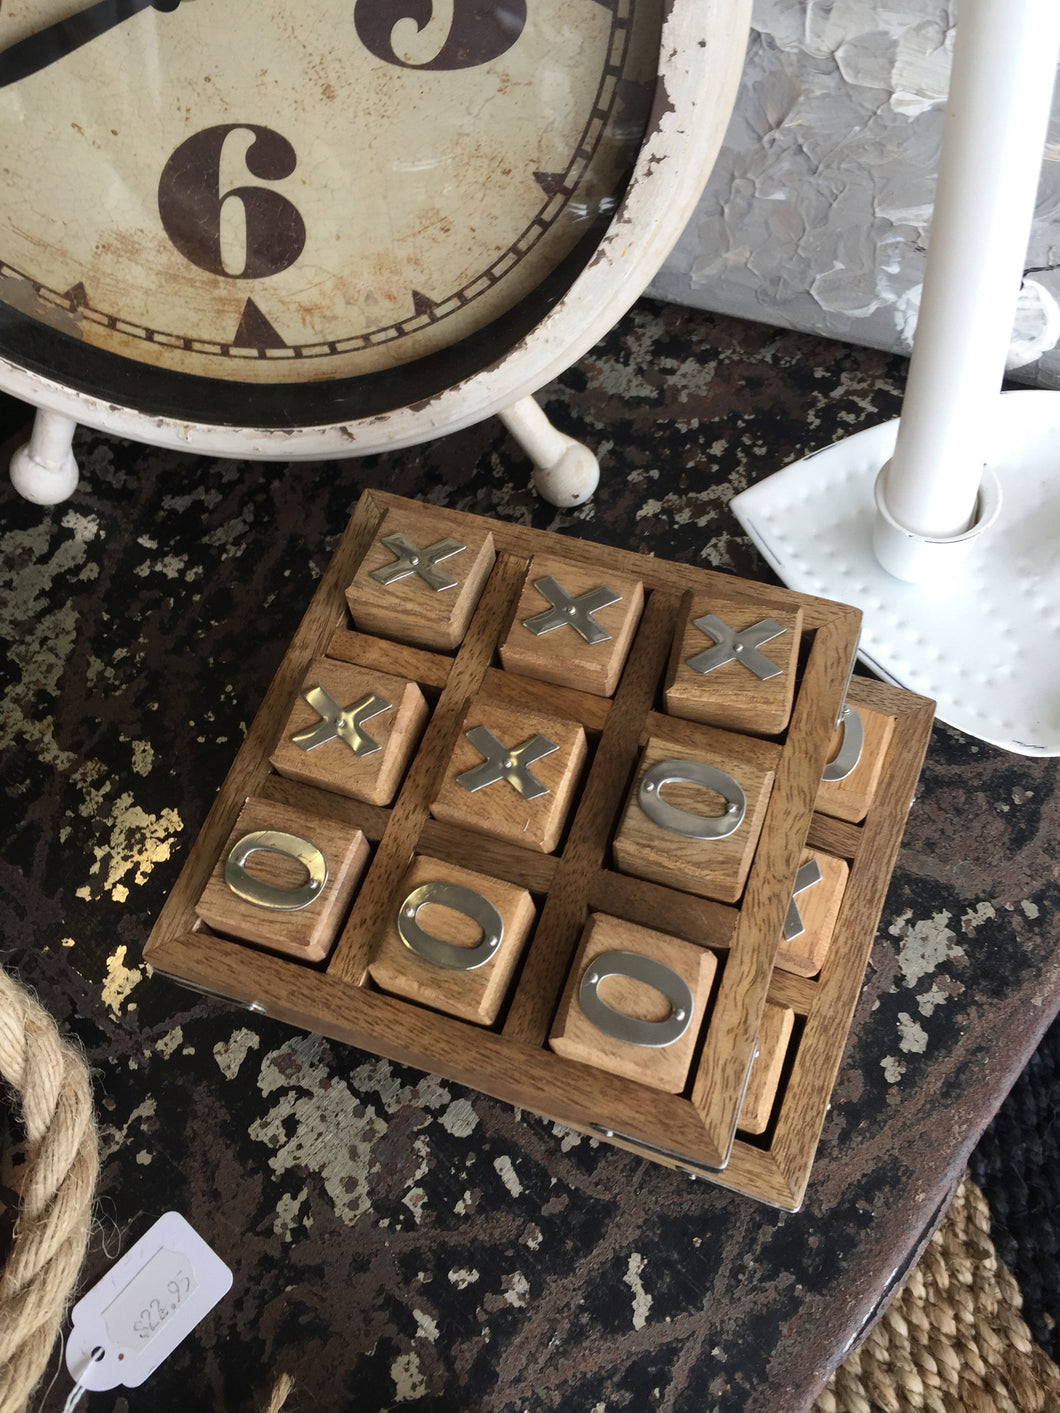 Wooden Tic-Tac-Toe set